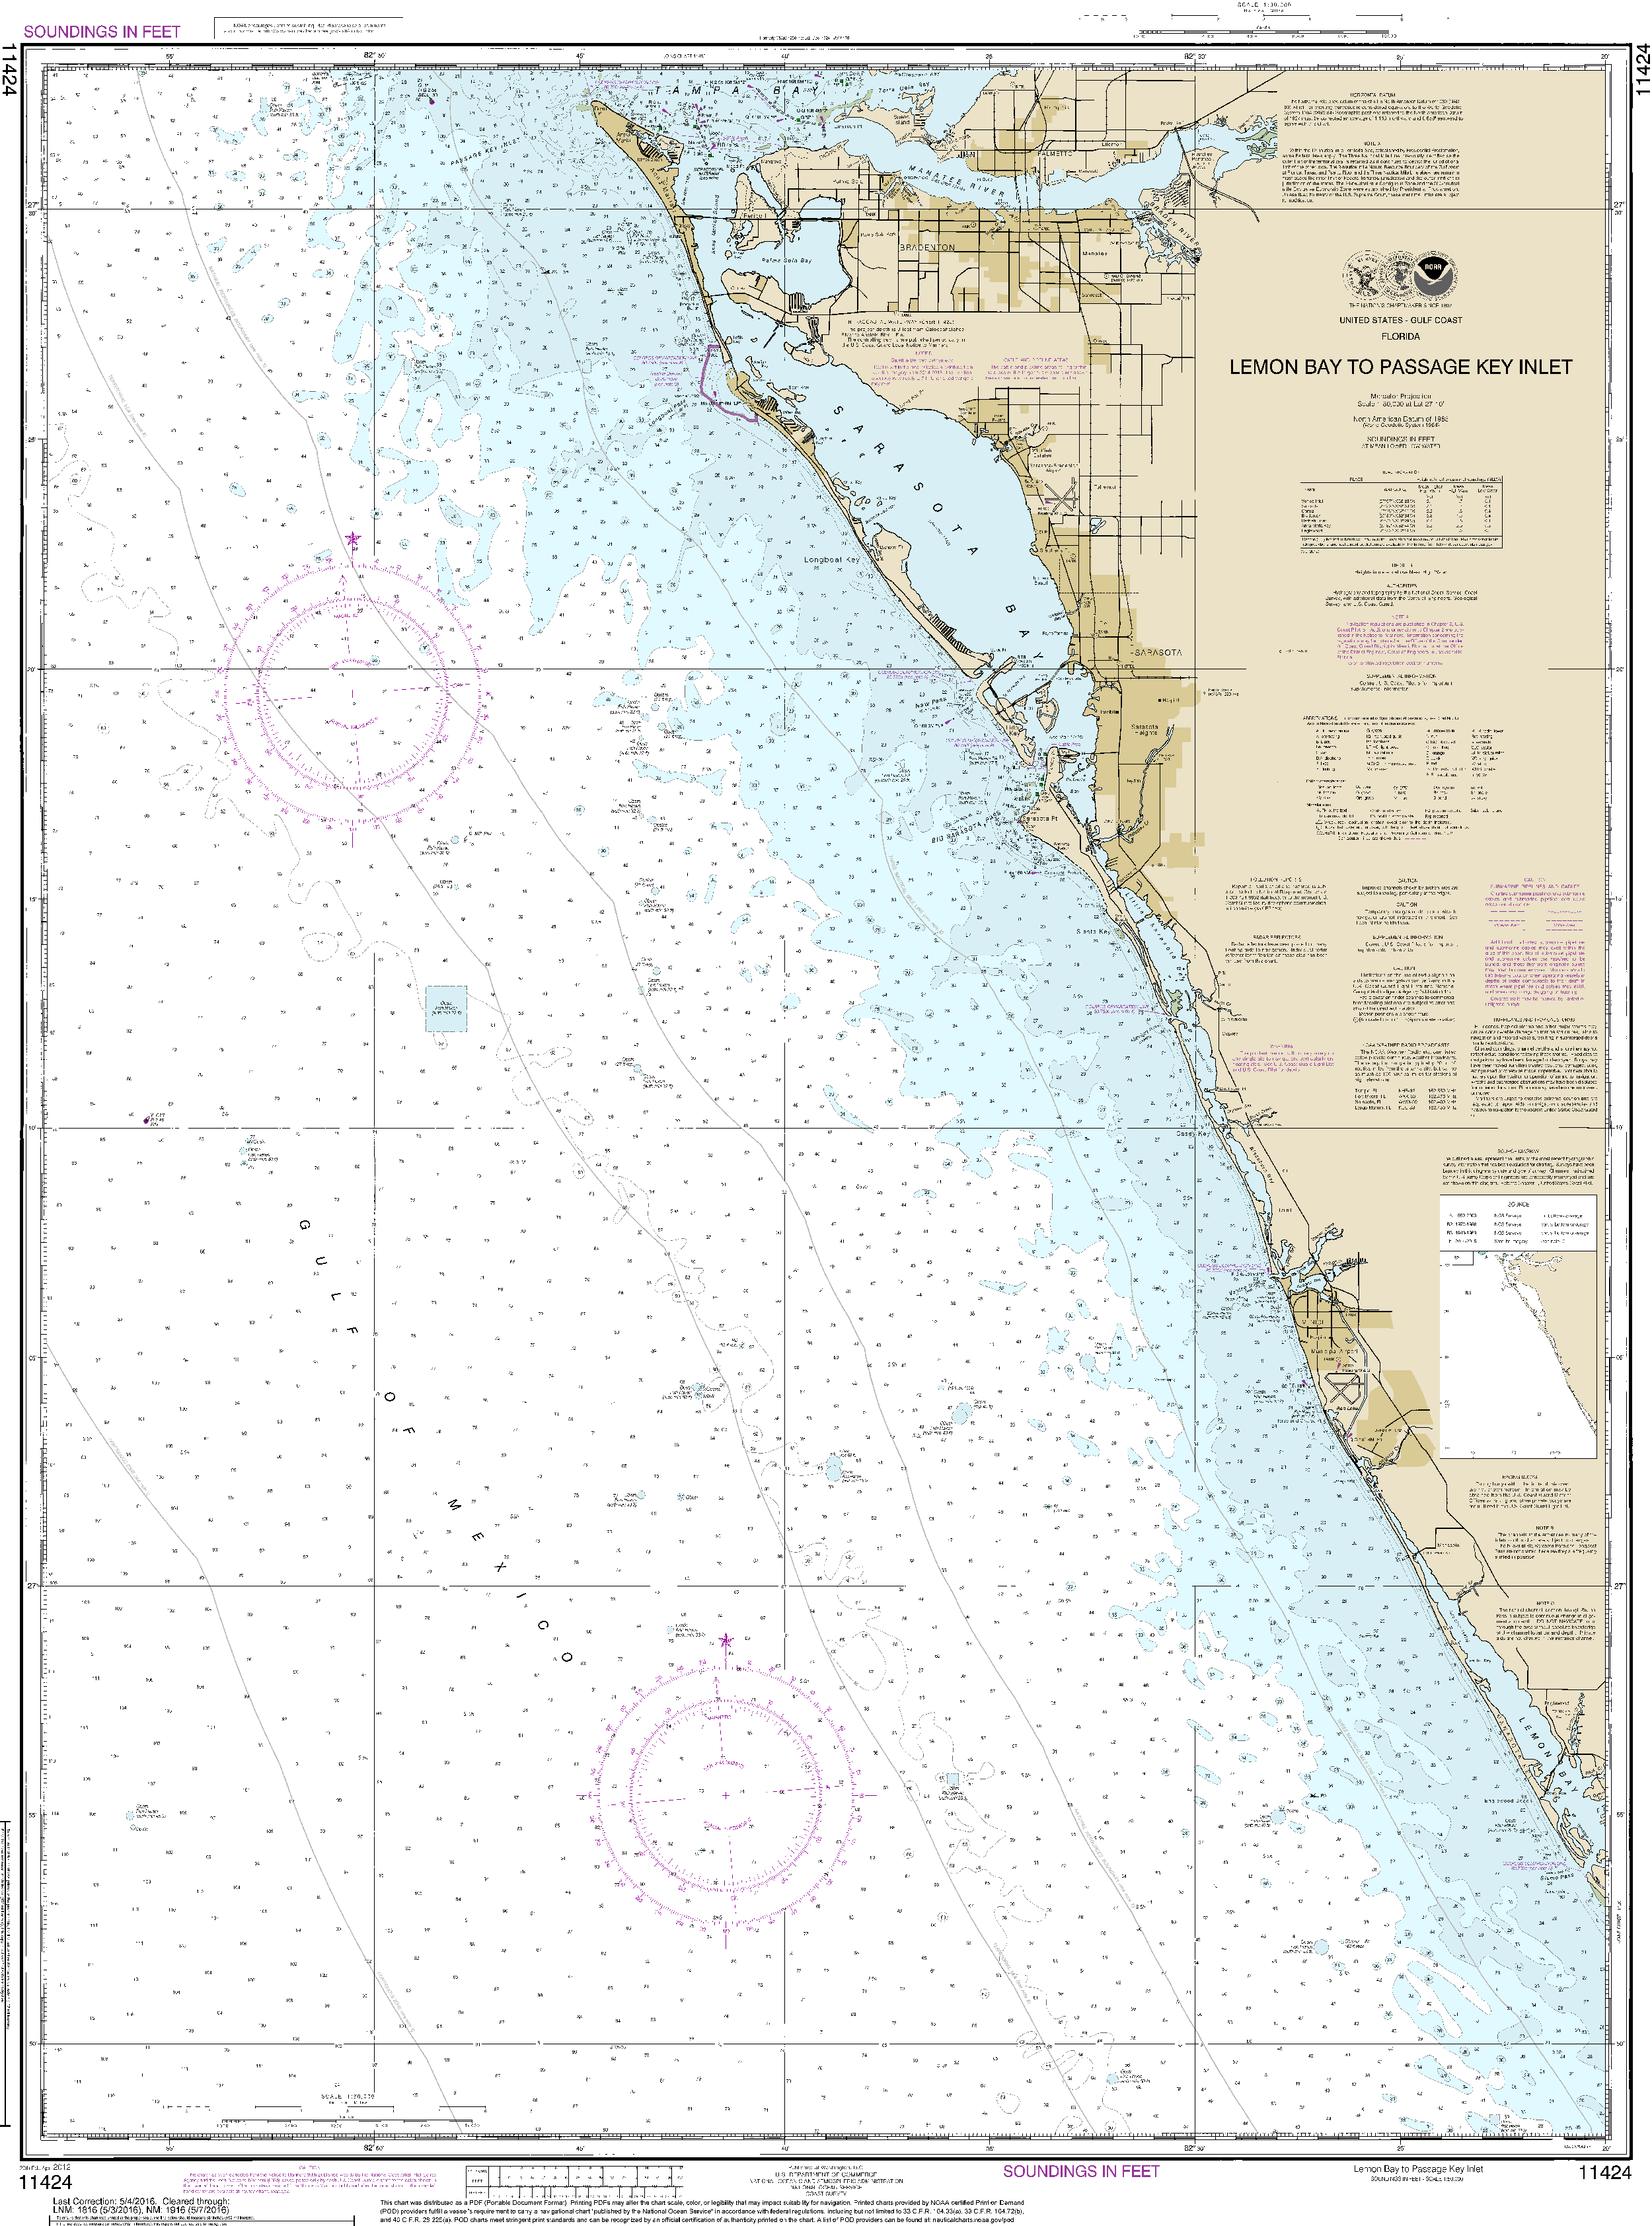 NOAA Nautical Chart 11424: Lemon Bay to Passage Key Inlet